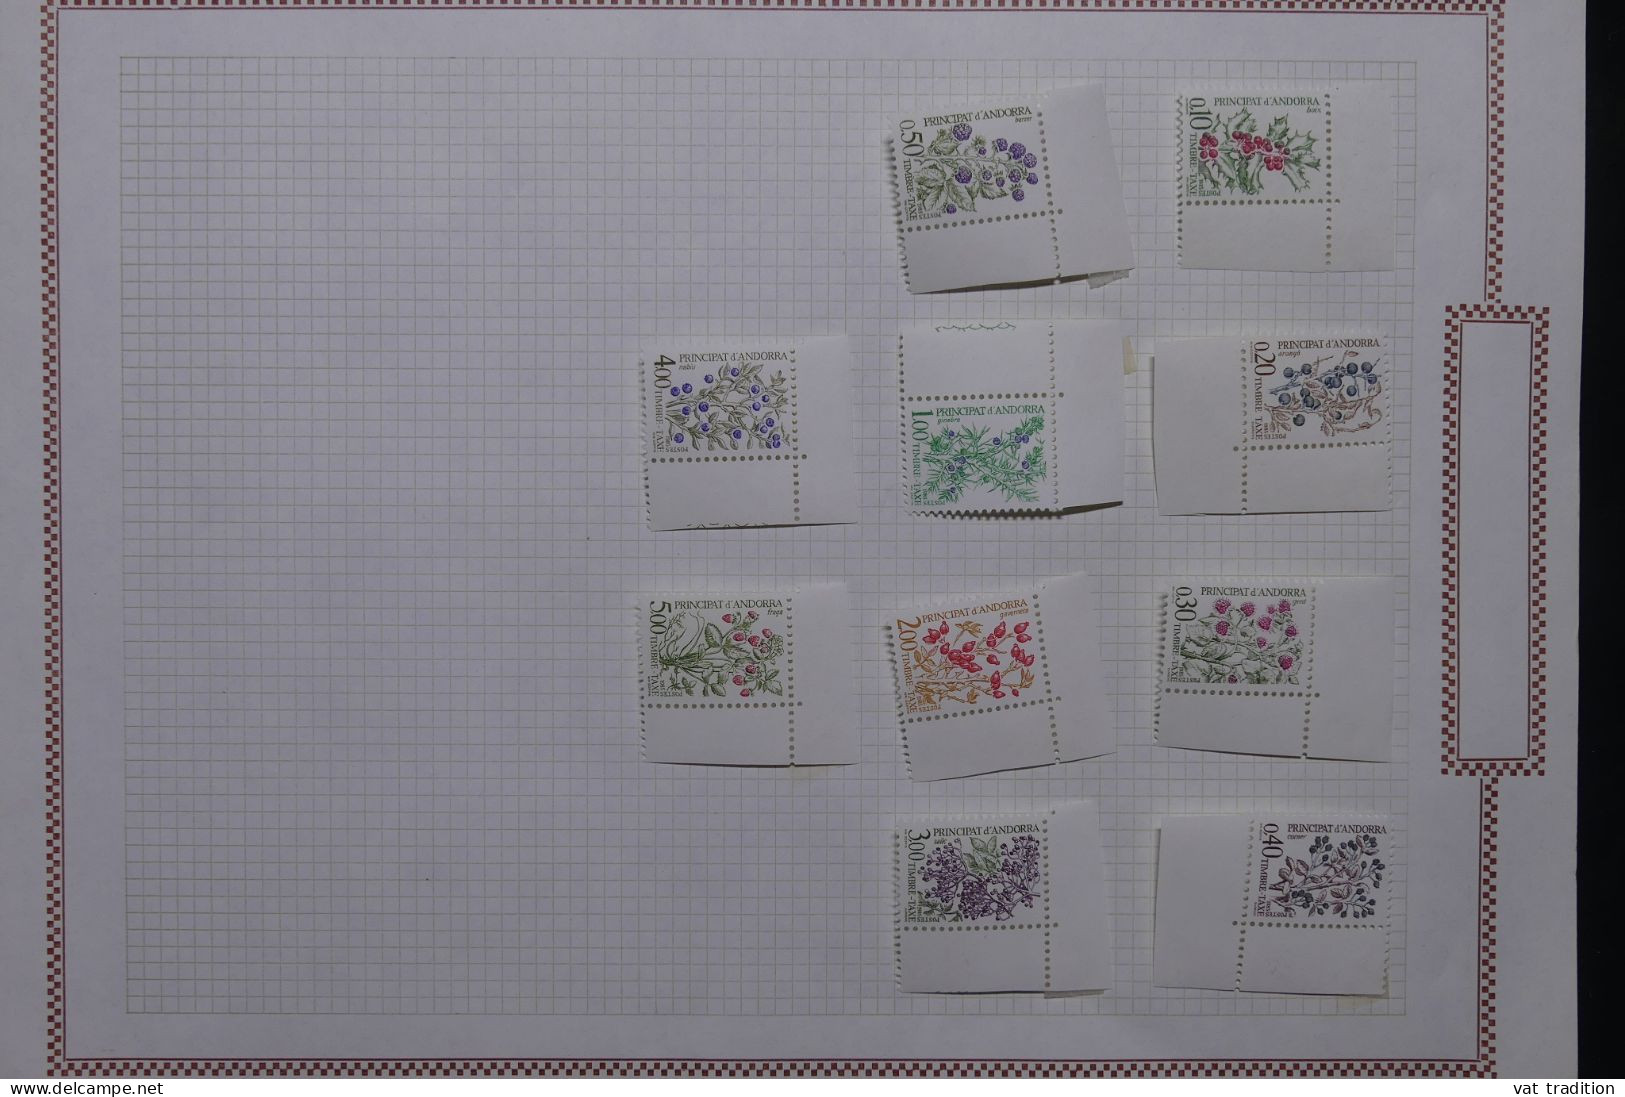 ANDORRE - Petite collection mais tous les timbres sont luxes - Les charnières sont sur les bords de feuille - A 63